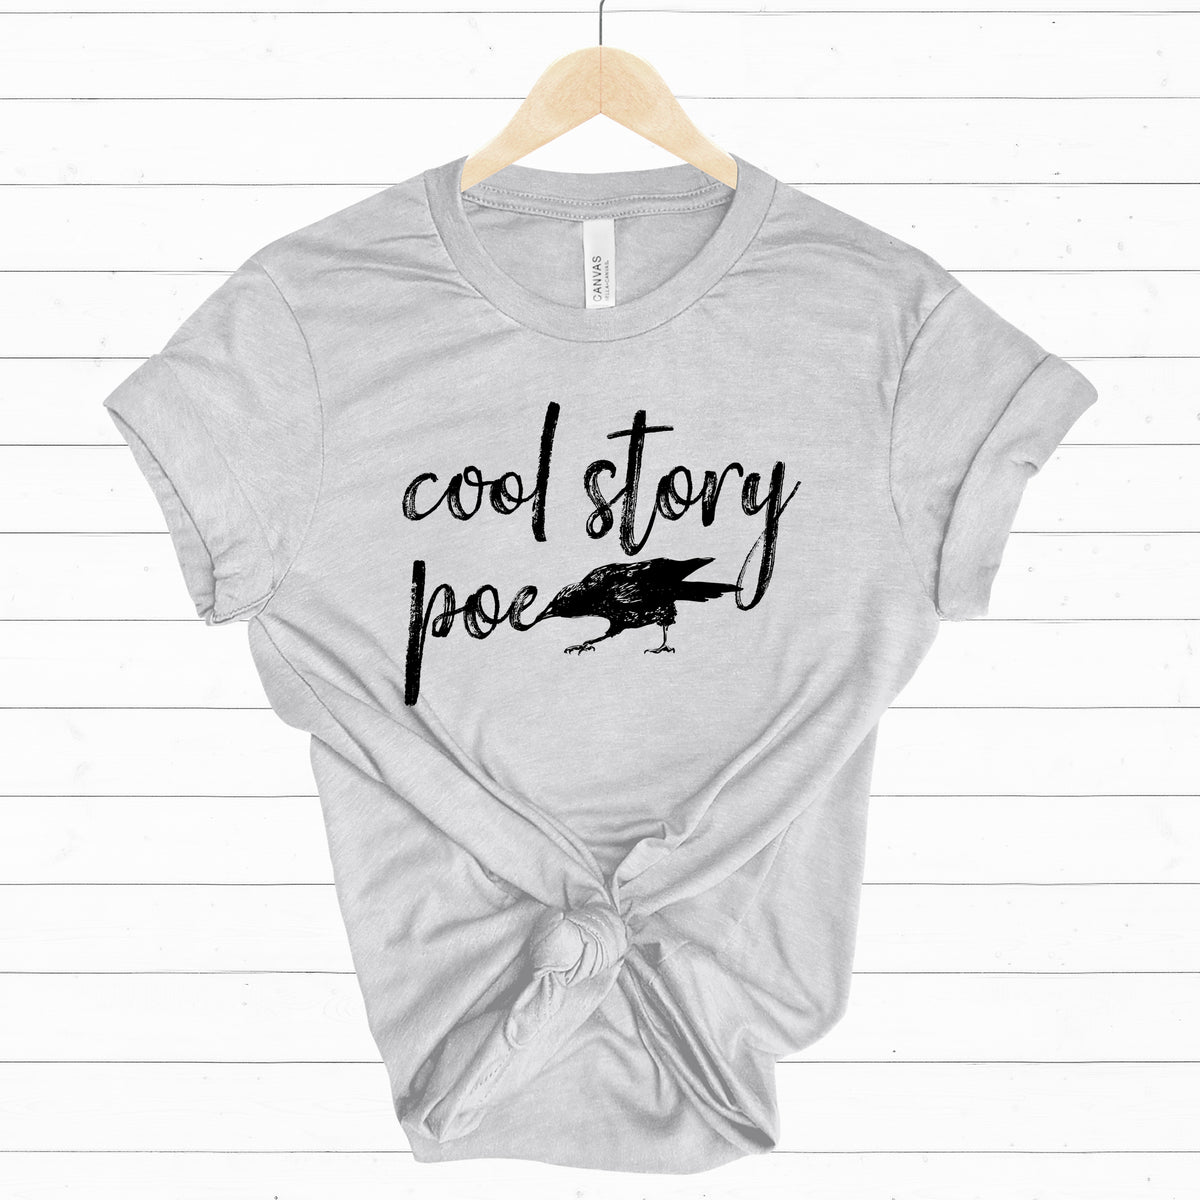 Cool Story Edgar Allan Poe Book Worm Shirt | Raven Book Lover Shirt | Unisex Jersey T-shirt